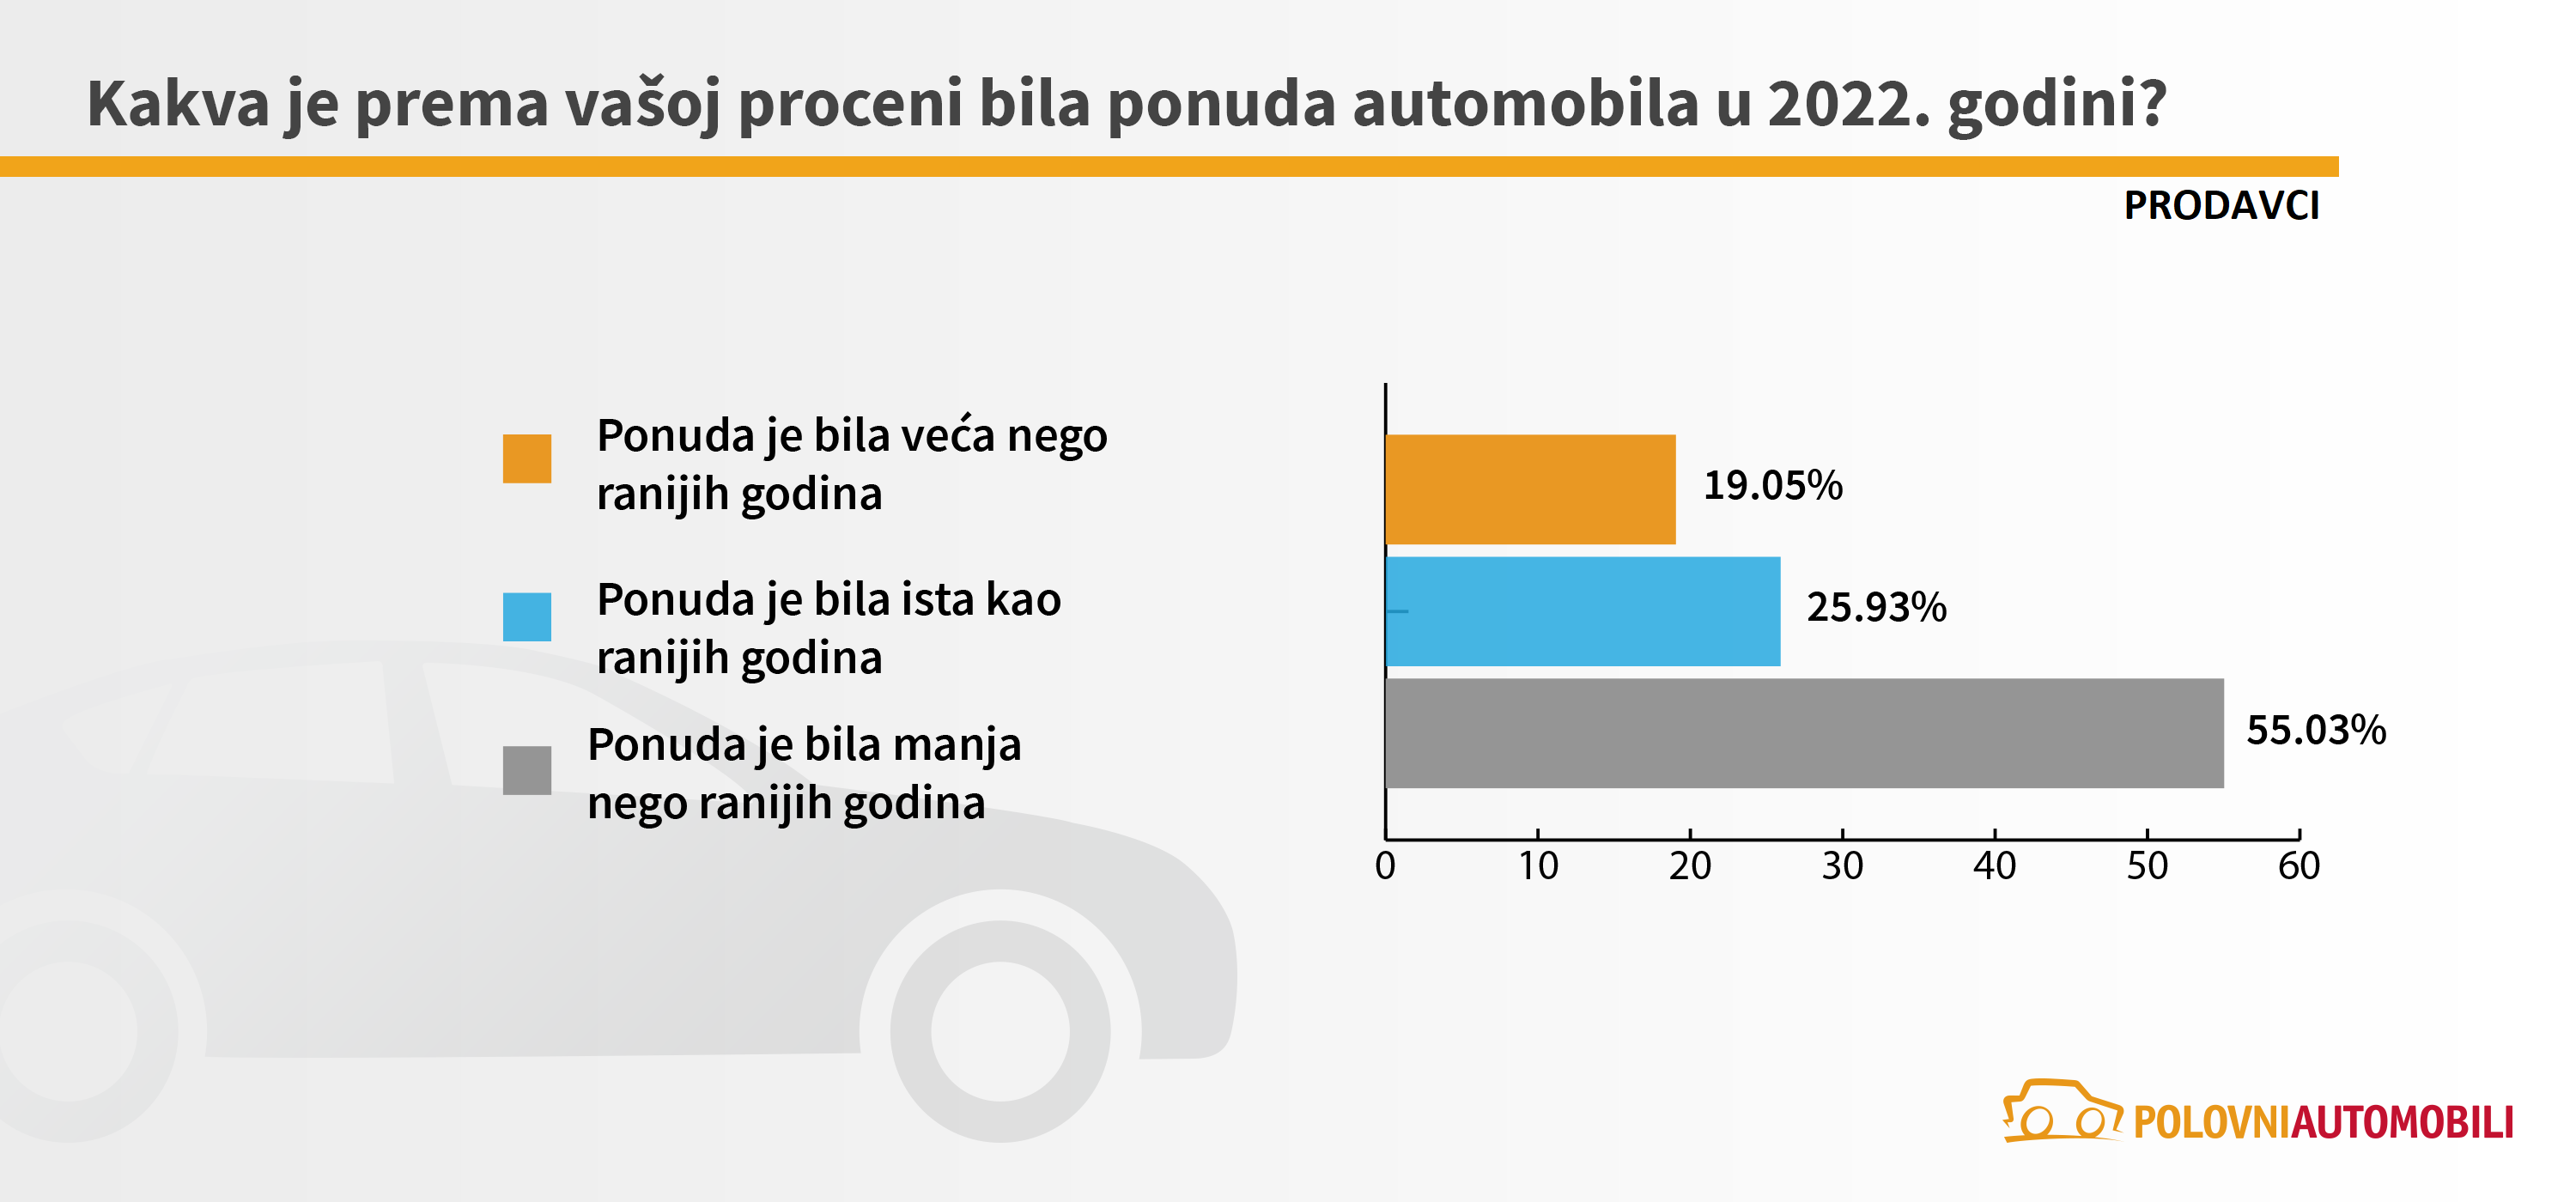 Kako će se kretati tržište automobila u 2023. godini? 5